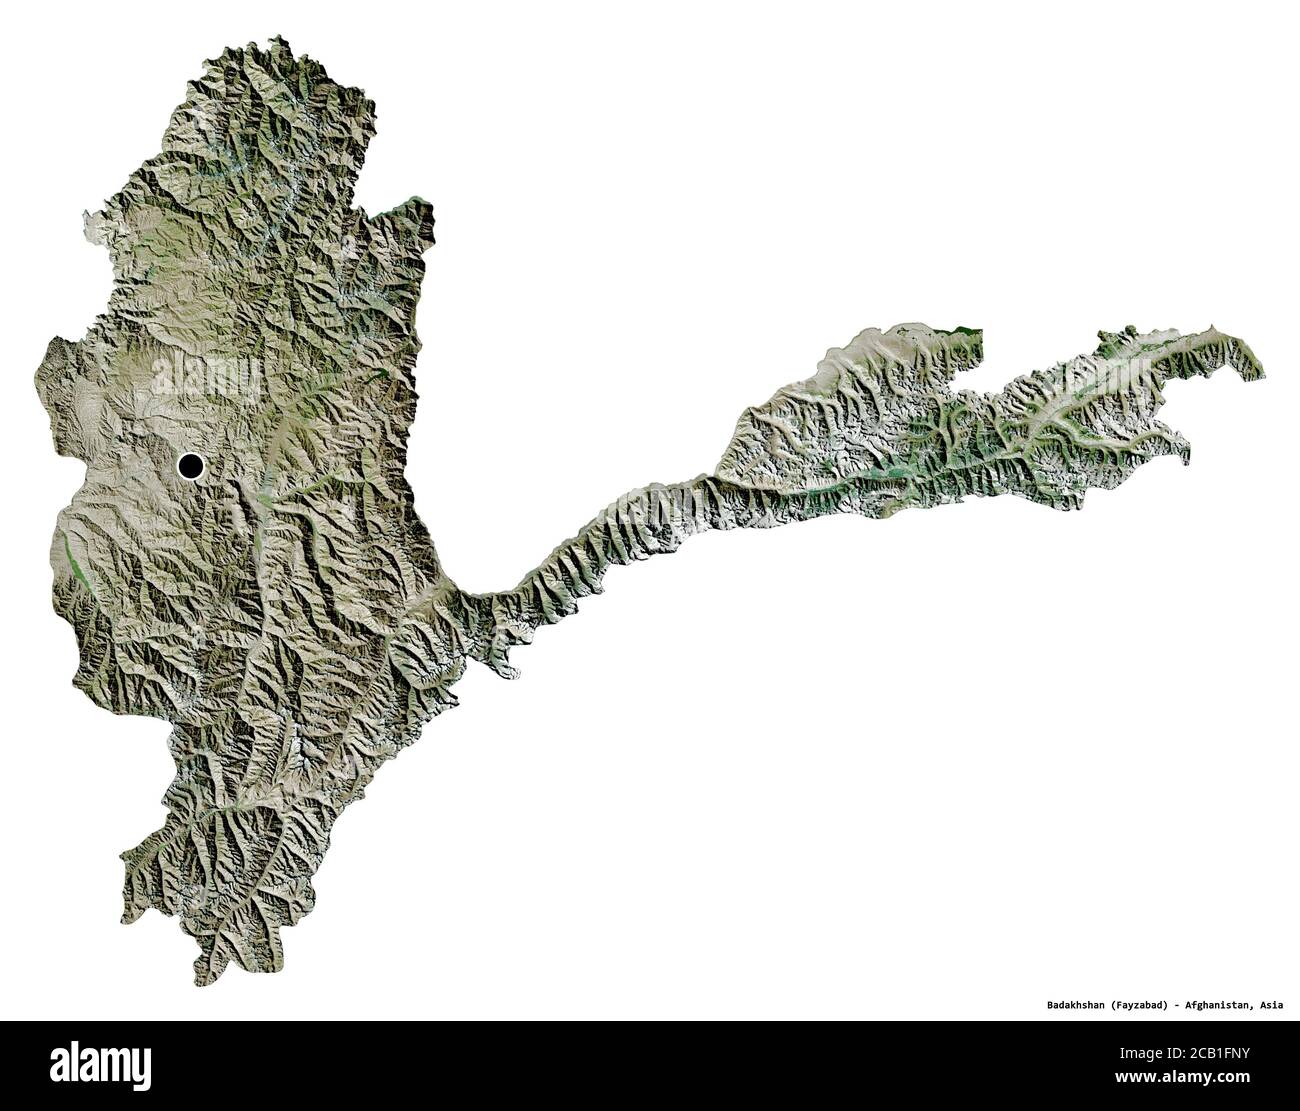 Forma di Badakhshan, provincia dell'Afghanistan, con la sua capitale isolata su sfondo bianco. Immagini satellitari. Rendering 3D Foto Stock